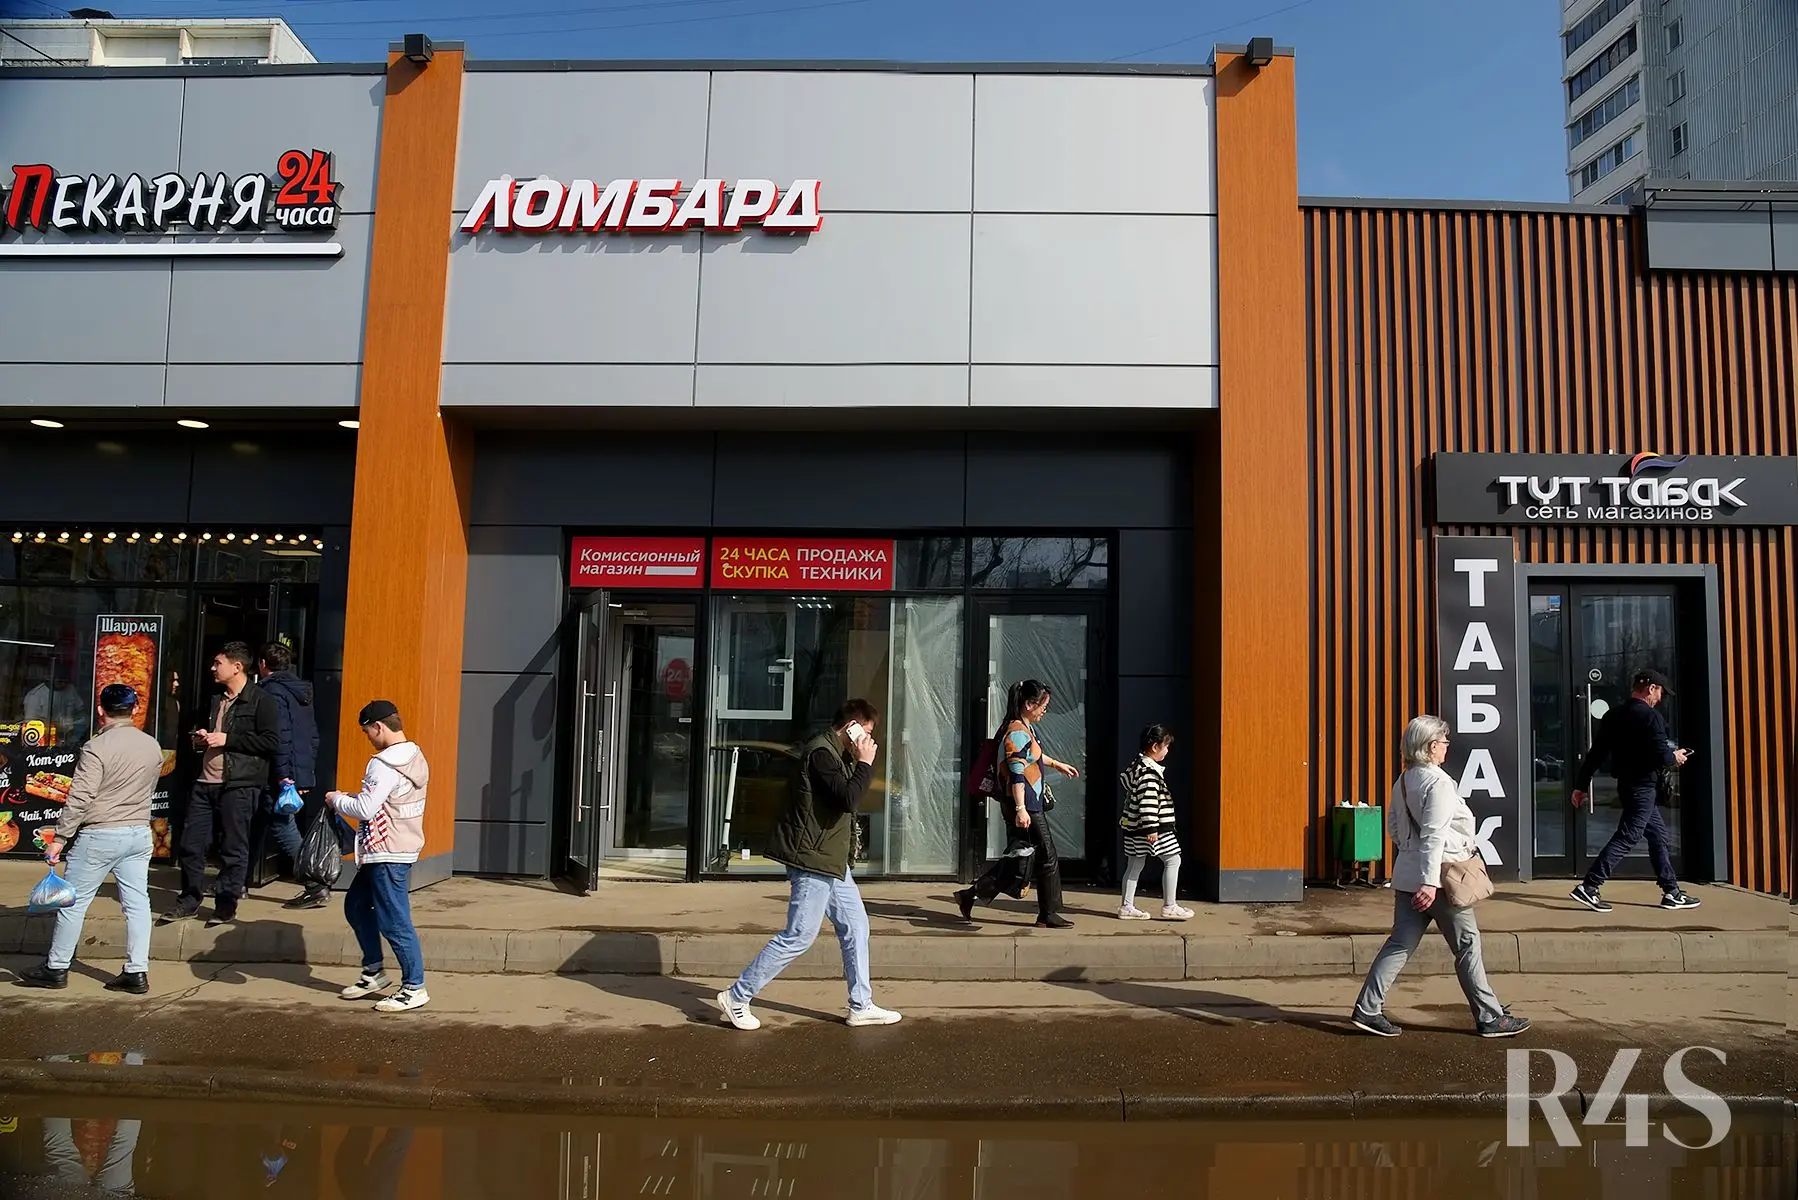 Продажа торговых помещений площадью 100.4 - 739.9 м2 в Москве:  Краснодарская, 57к3 R4S | Realty4Sale